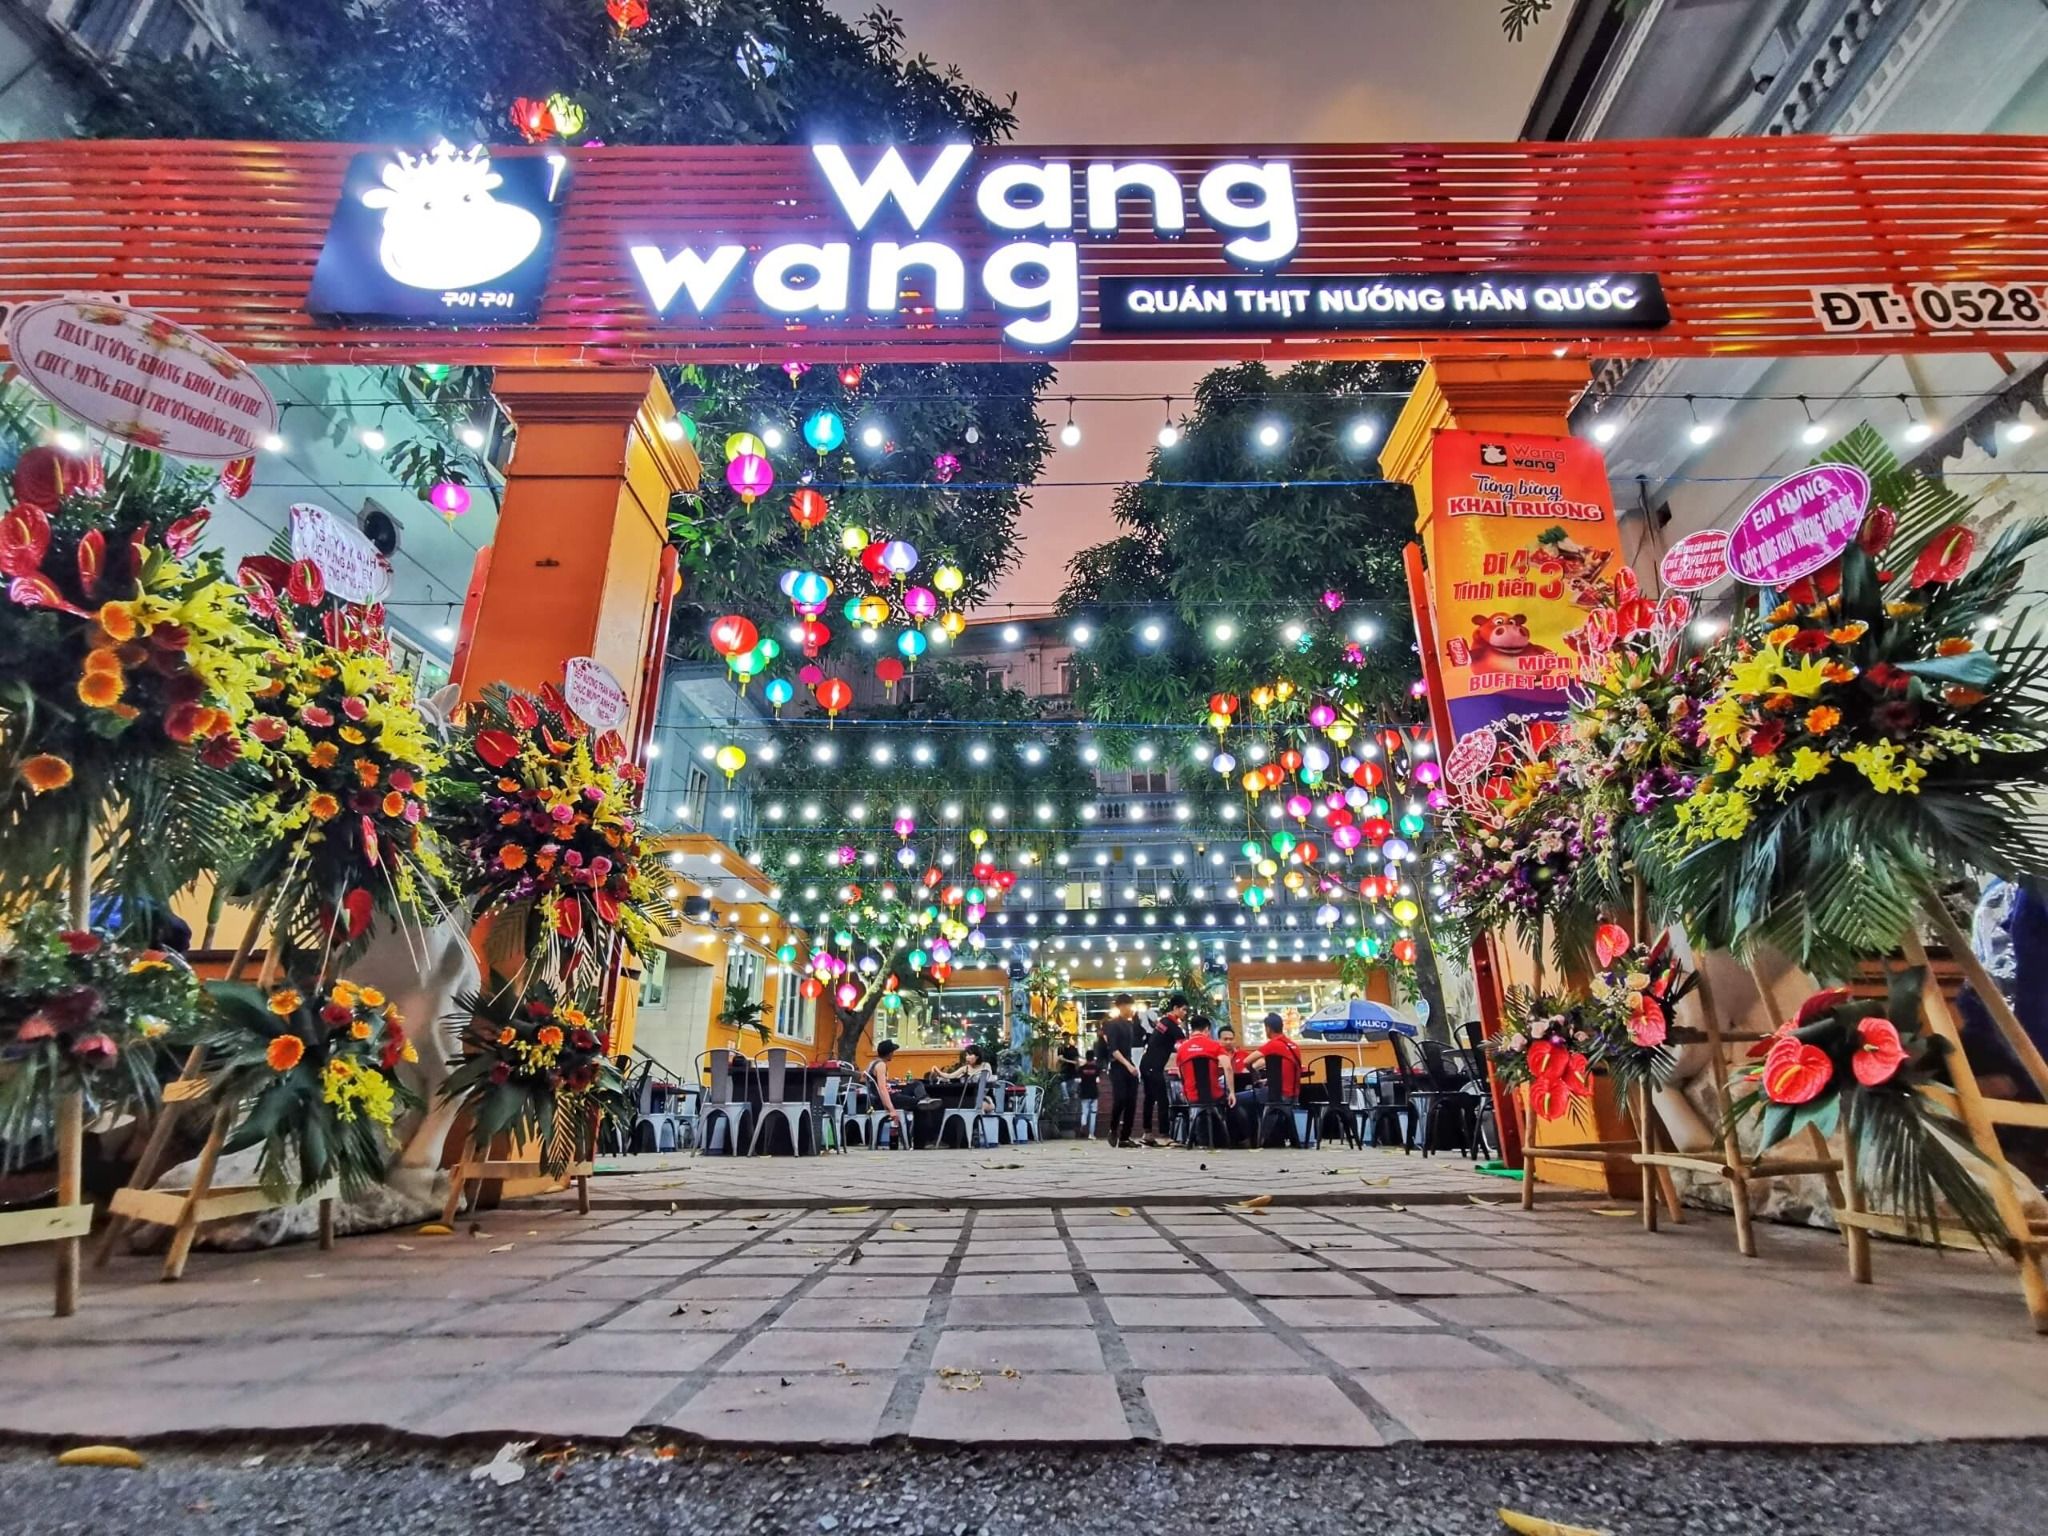 Lẩu Nướng Wang Wang - Vĩnh Tuy